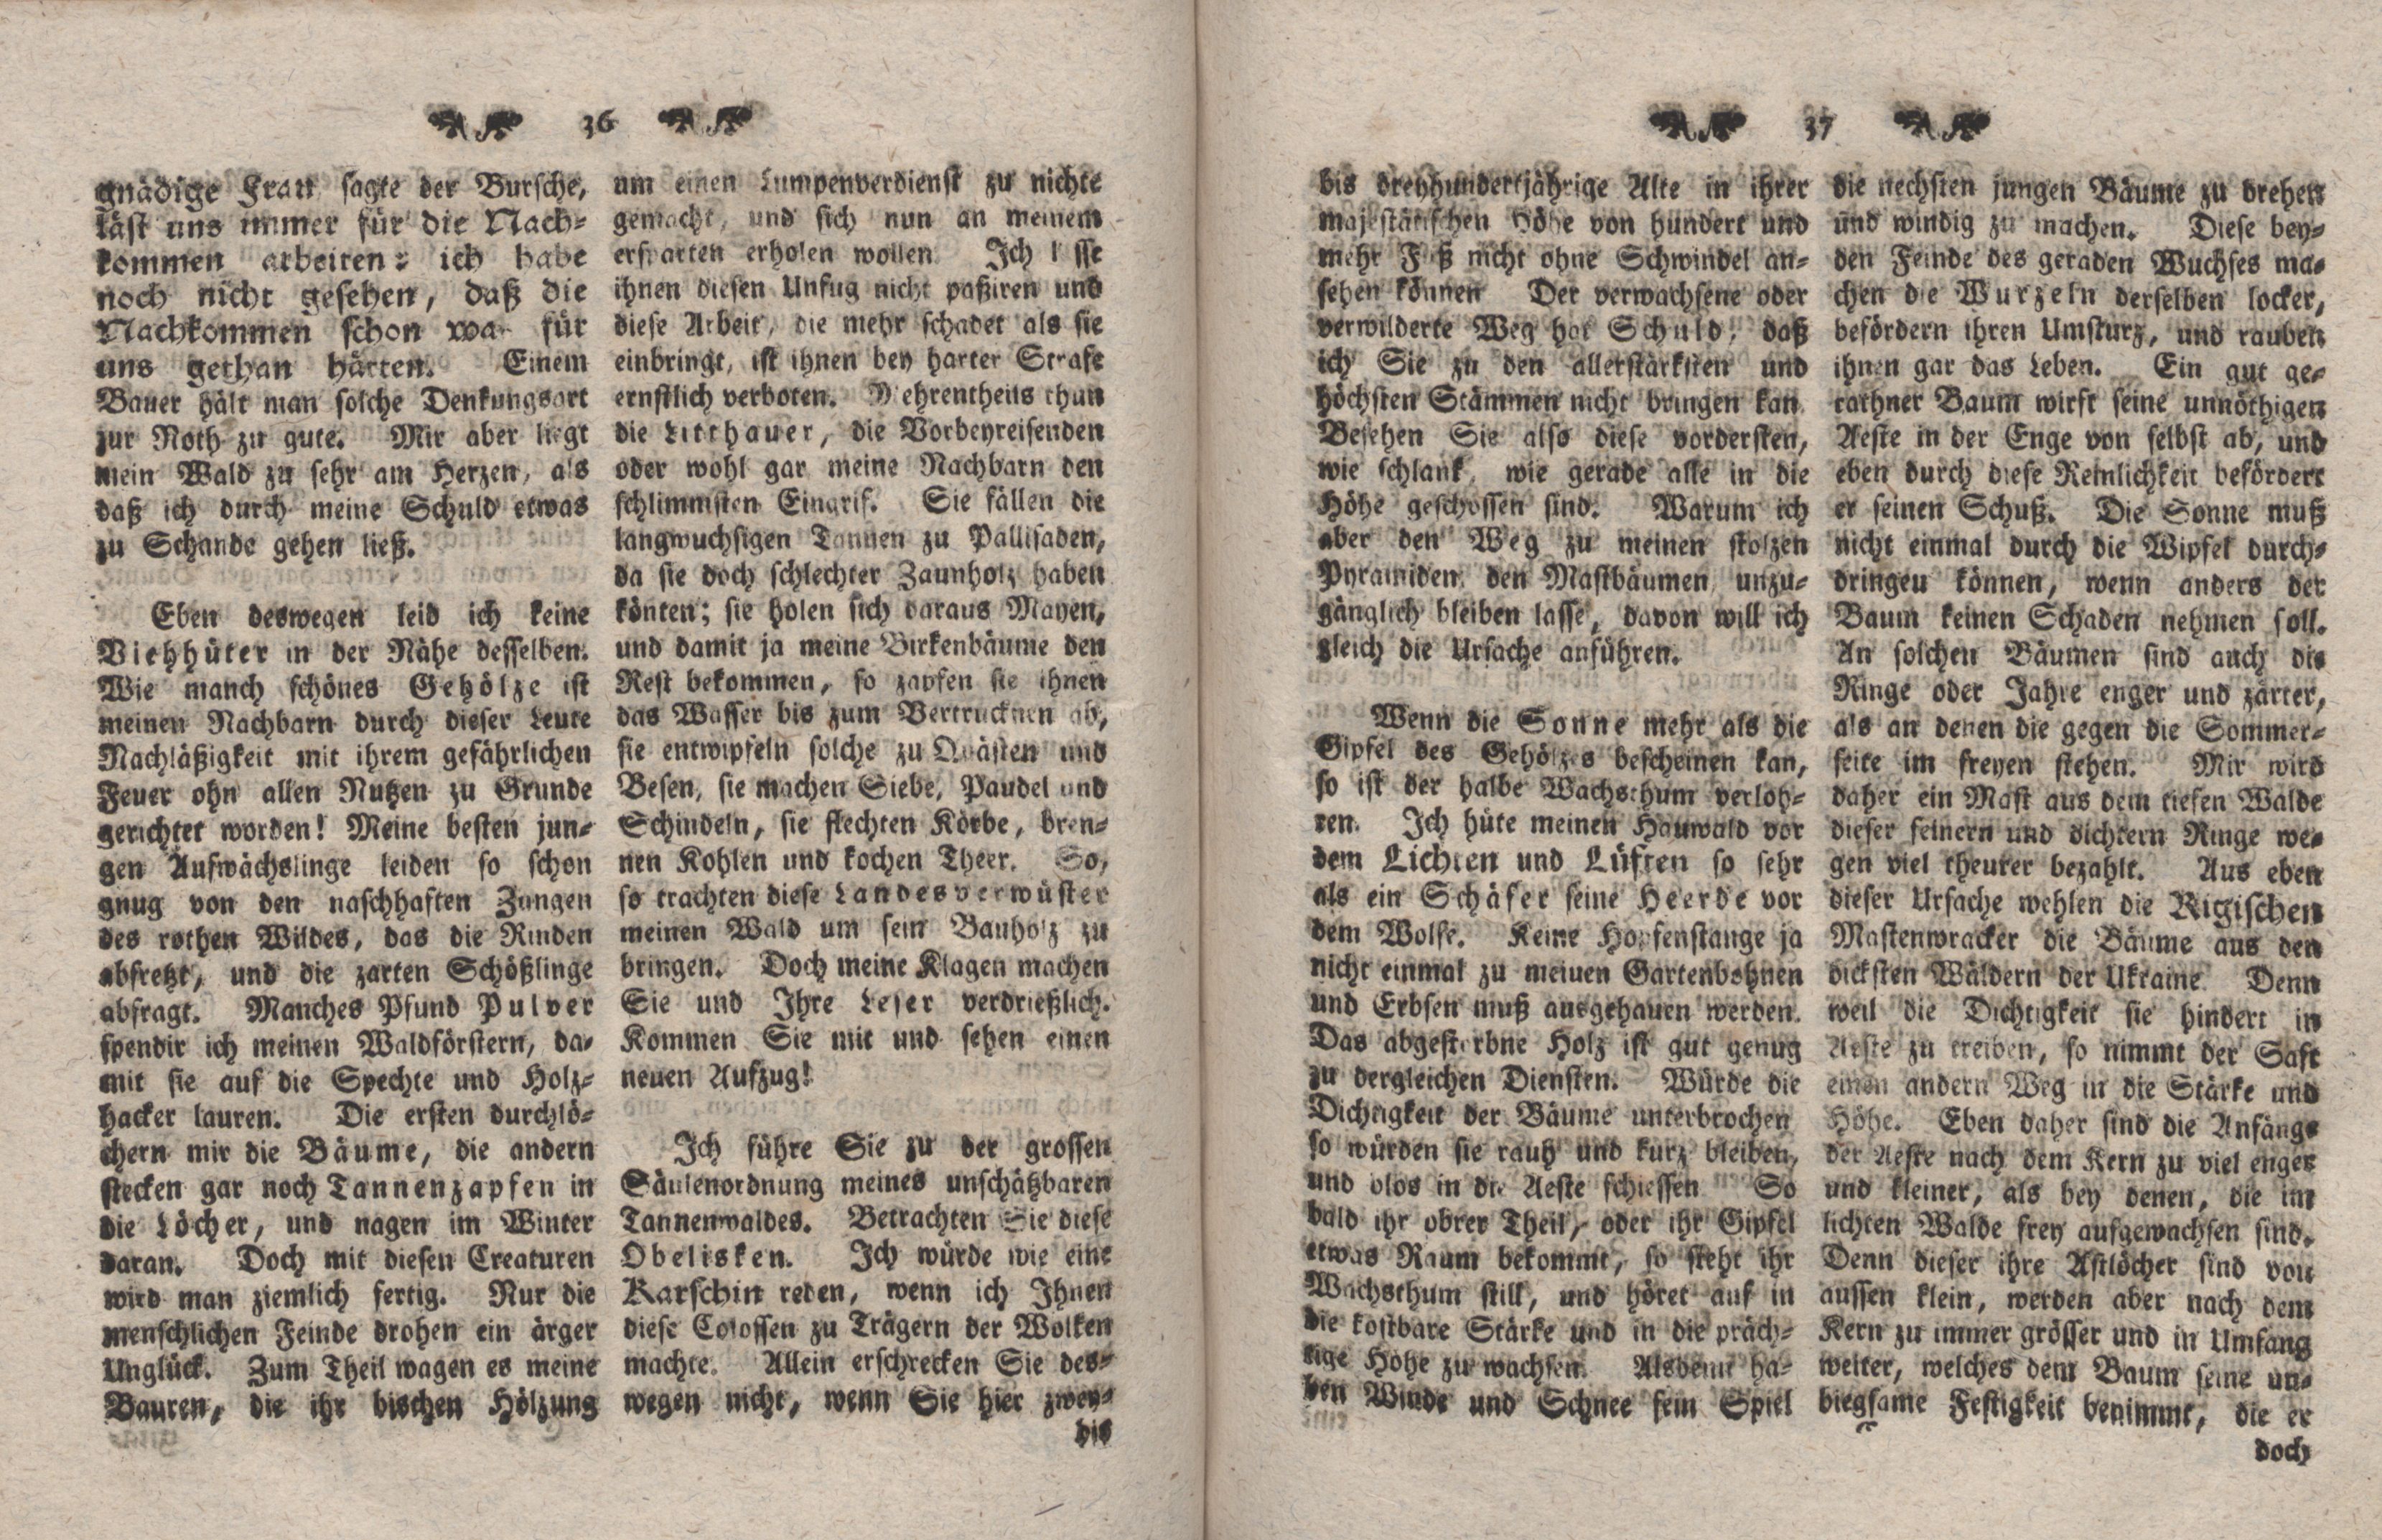 Gelehrte Beyträge zu den Rigischen Anzeigen 1766 (1766) | 11. (36-37) Main body of text